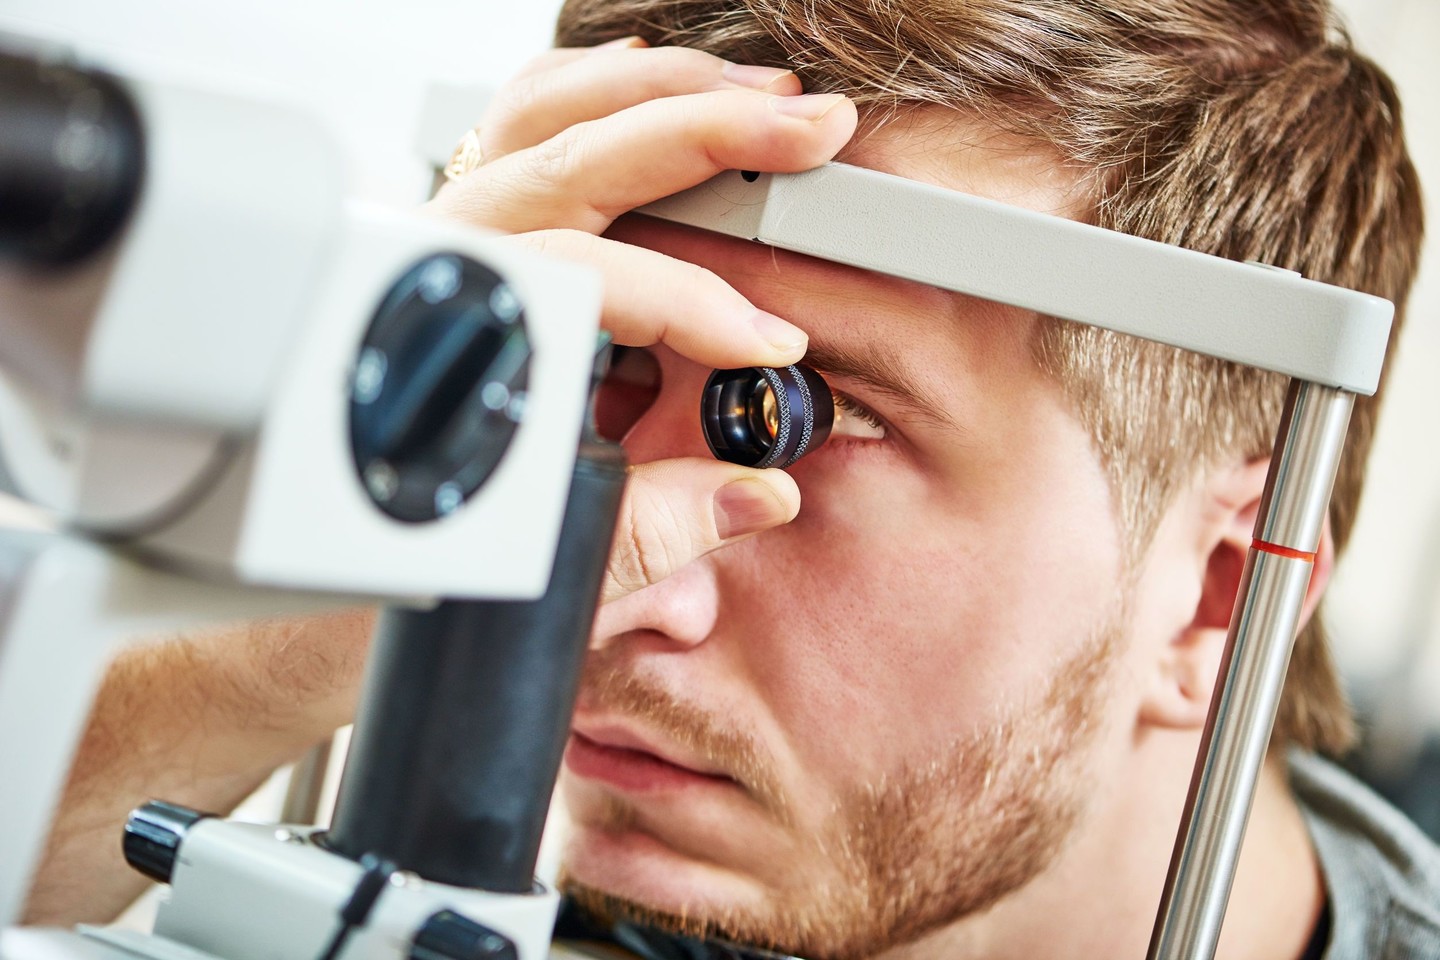   Tai liga, kai pažeidžiamos akies tinklainės kraujagyslės ir žmogus galiausiai gali apakti. <br> 123rf nuotr.